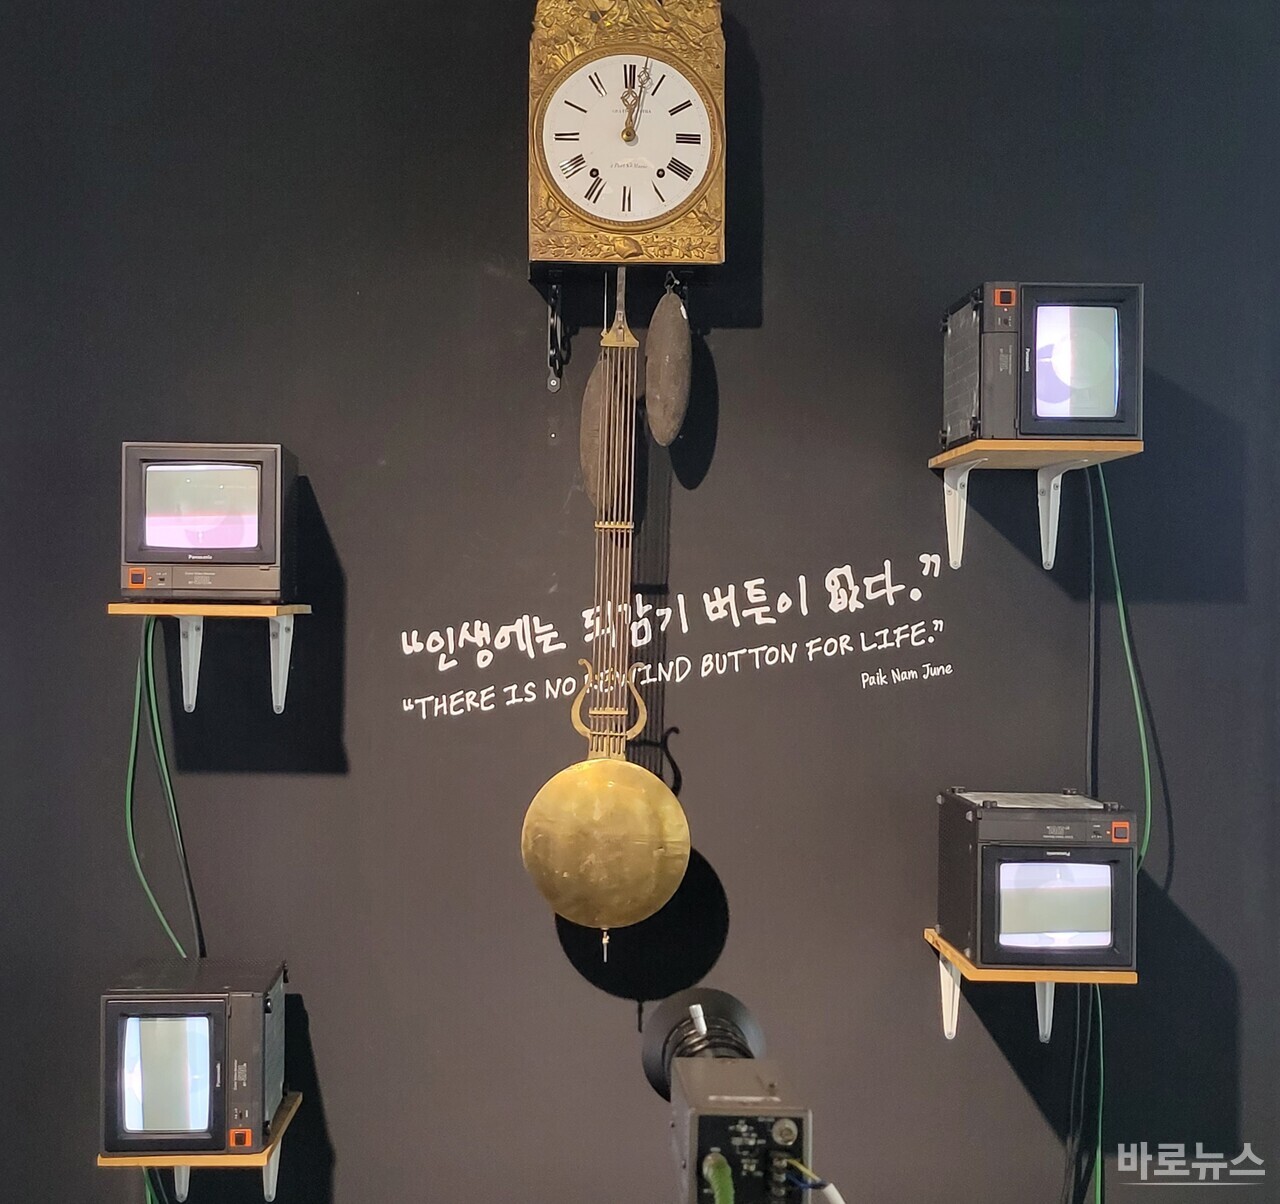 ▲ 백남준 4 moniter sets(Panasonic), clock, video camera on tripod 170x140x200cm 1989 Courtesy of the artist and Duson Gallery 부분 사진 